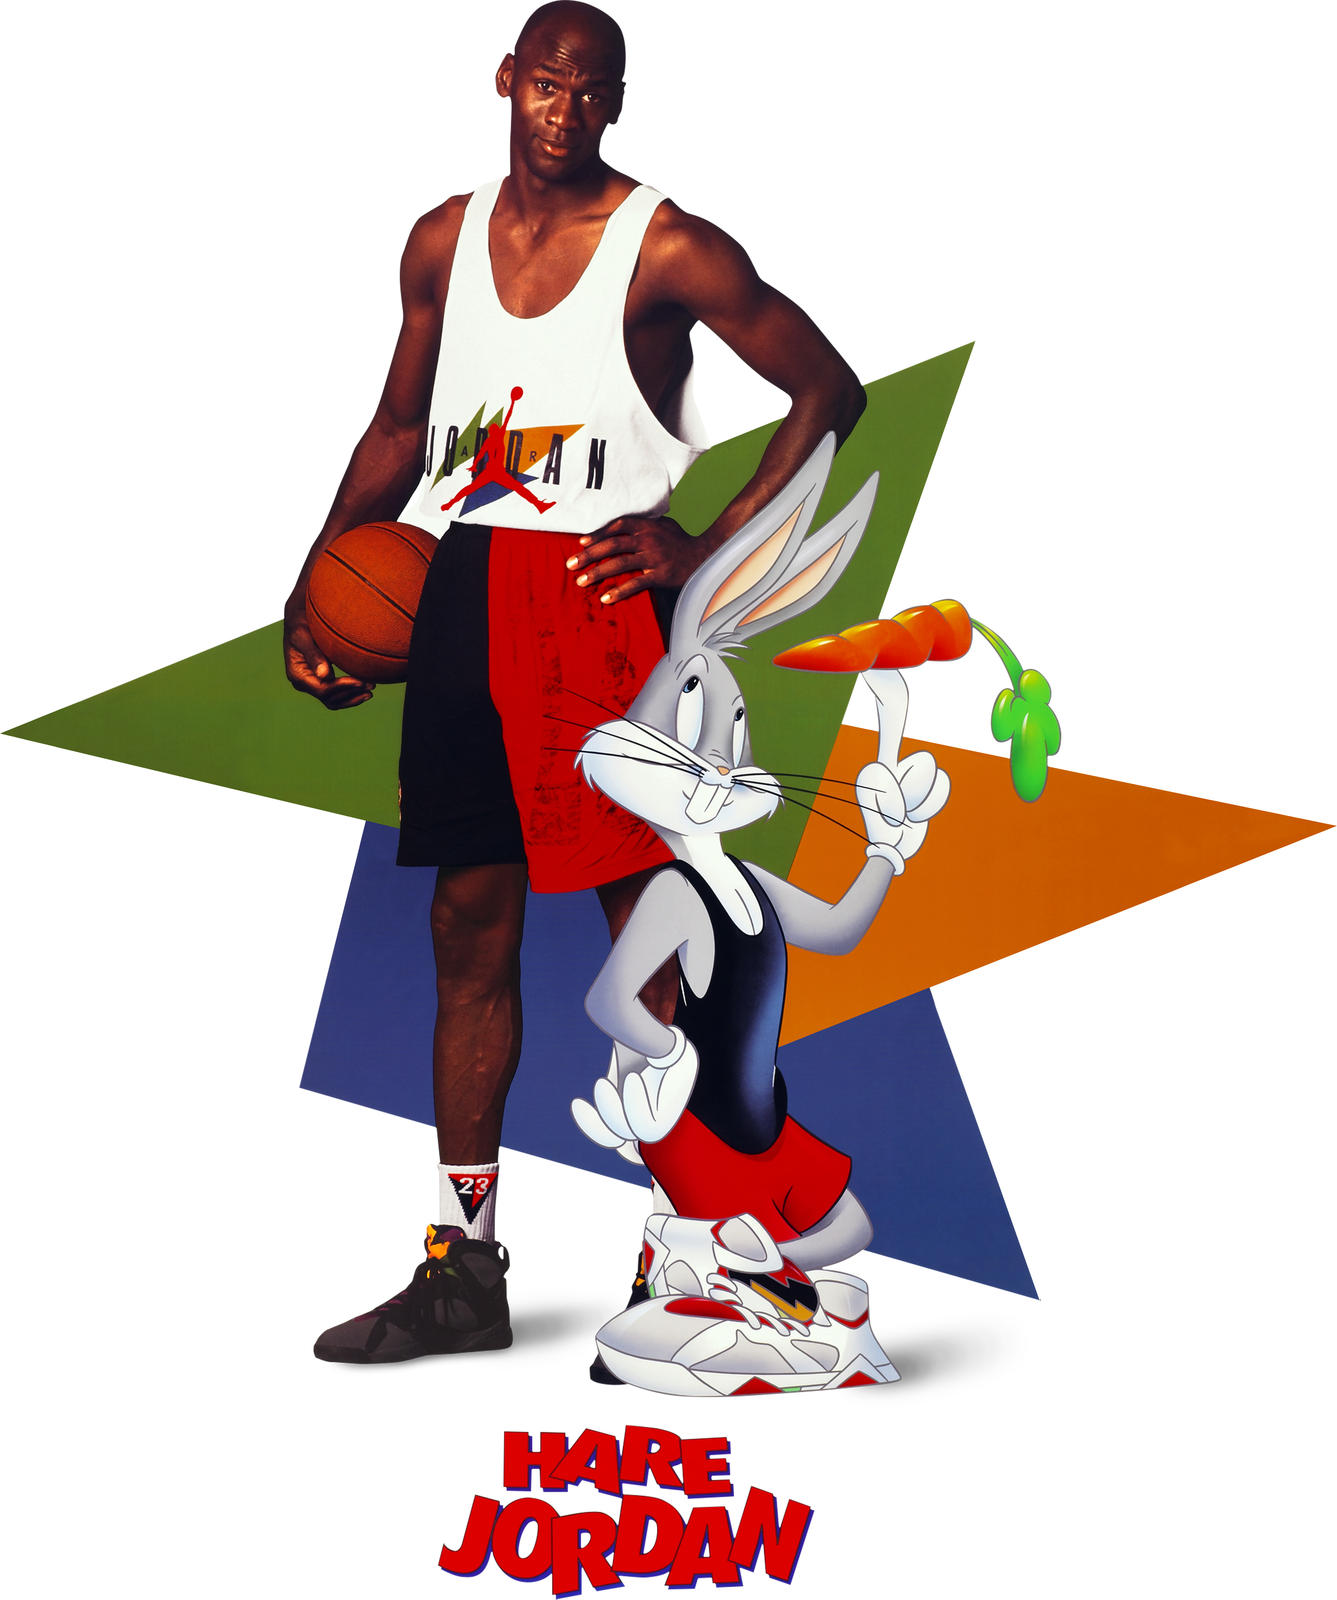 Air Jordan Vii Original Poster - Jordan 7 Hare Bugs Bunny , HD Wallpaper & Backgrounds